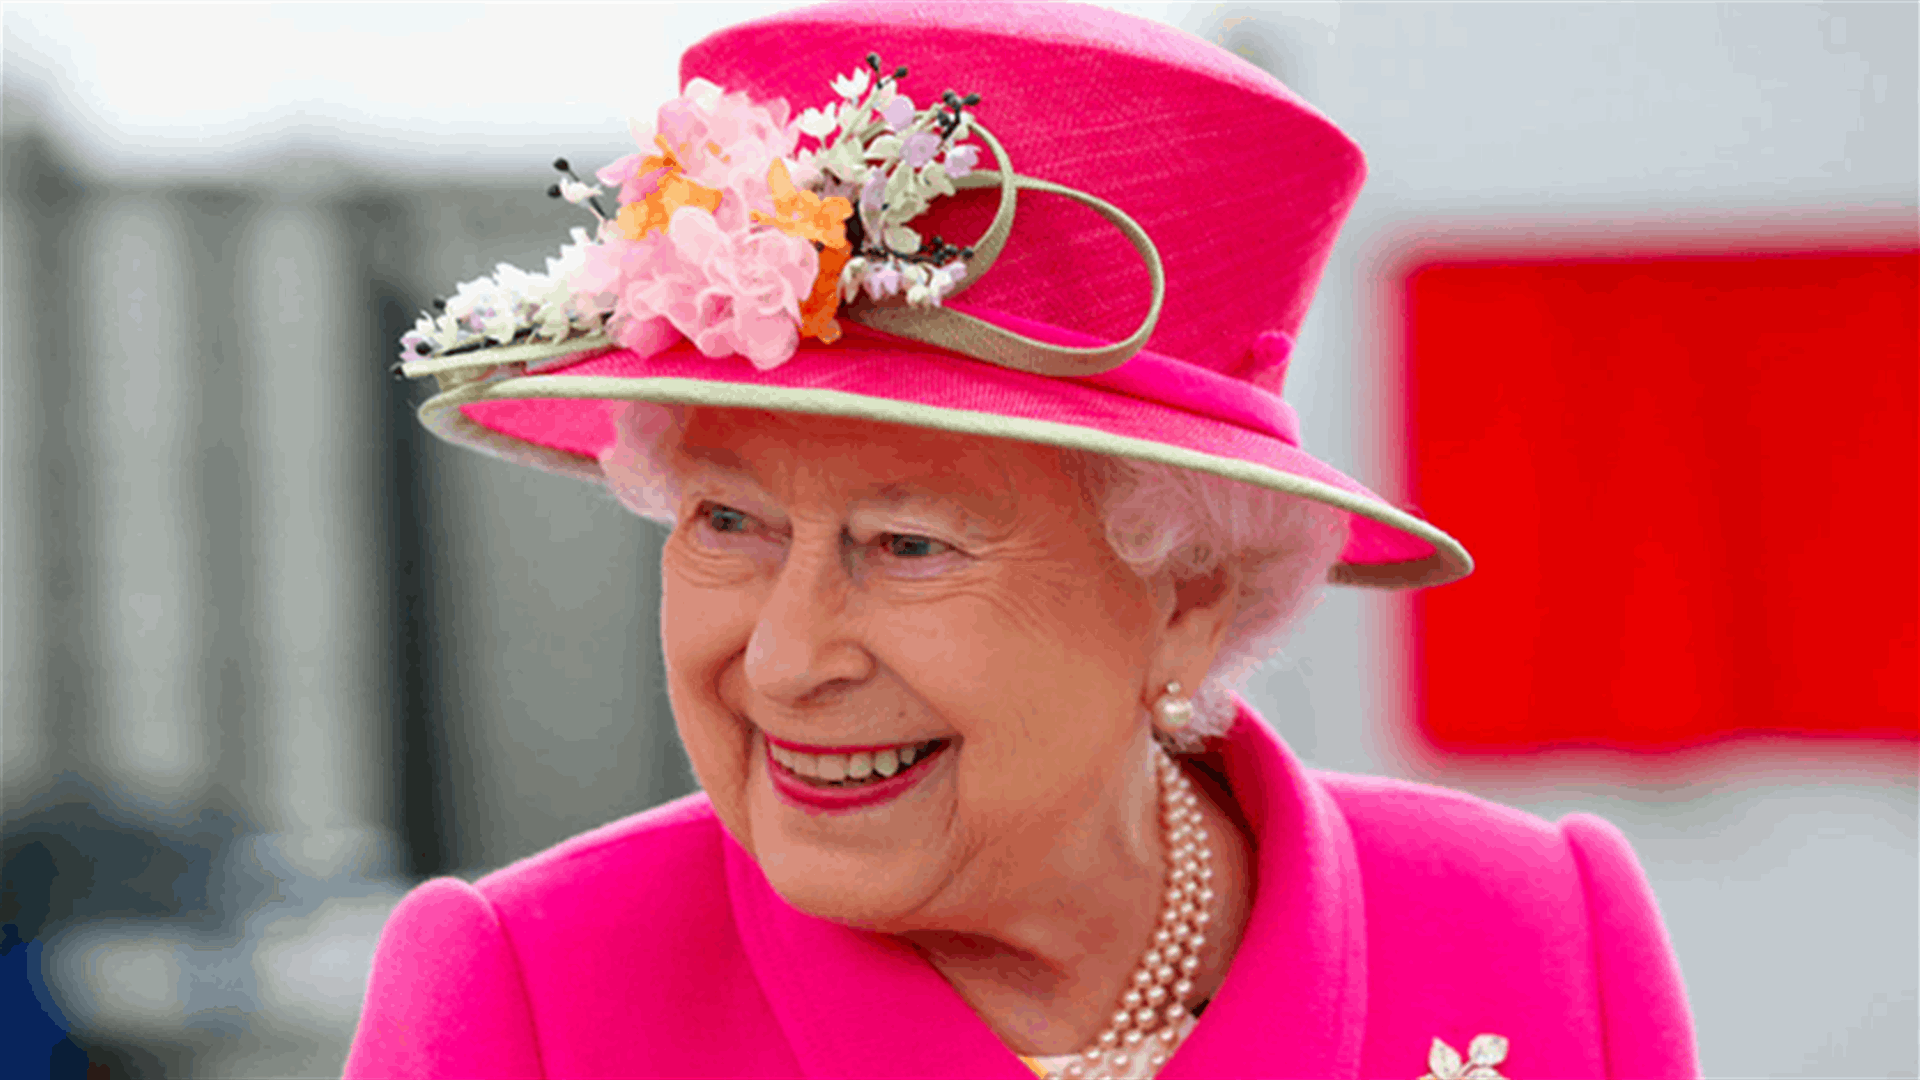 مع بلوغ الملكة إليزابيث سنّ الـ 95... لماذا تحتفل بعيد ميلادها مرتين في السنة؟